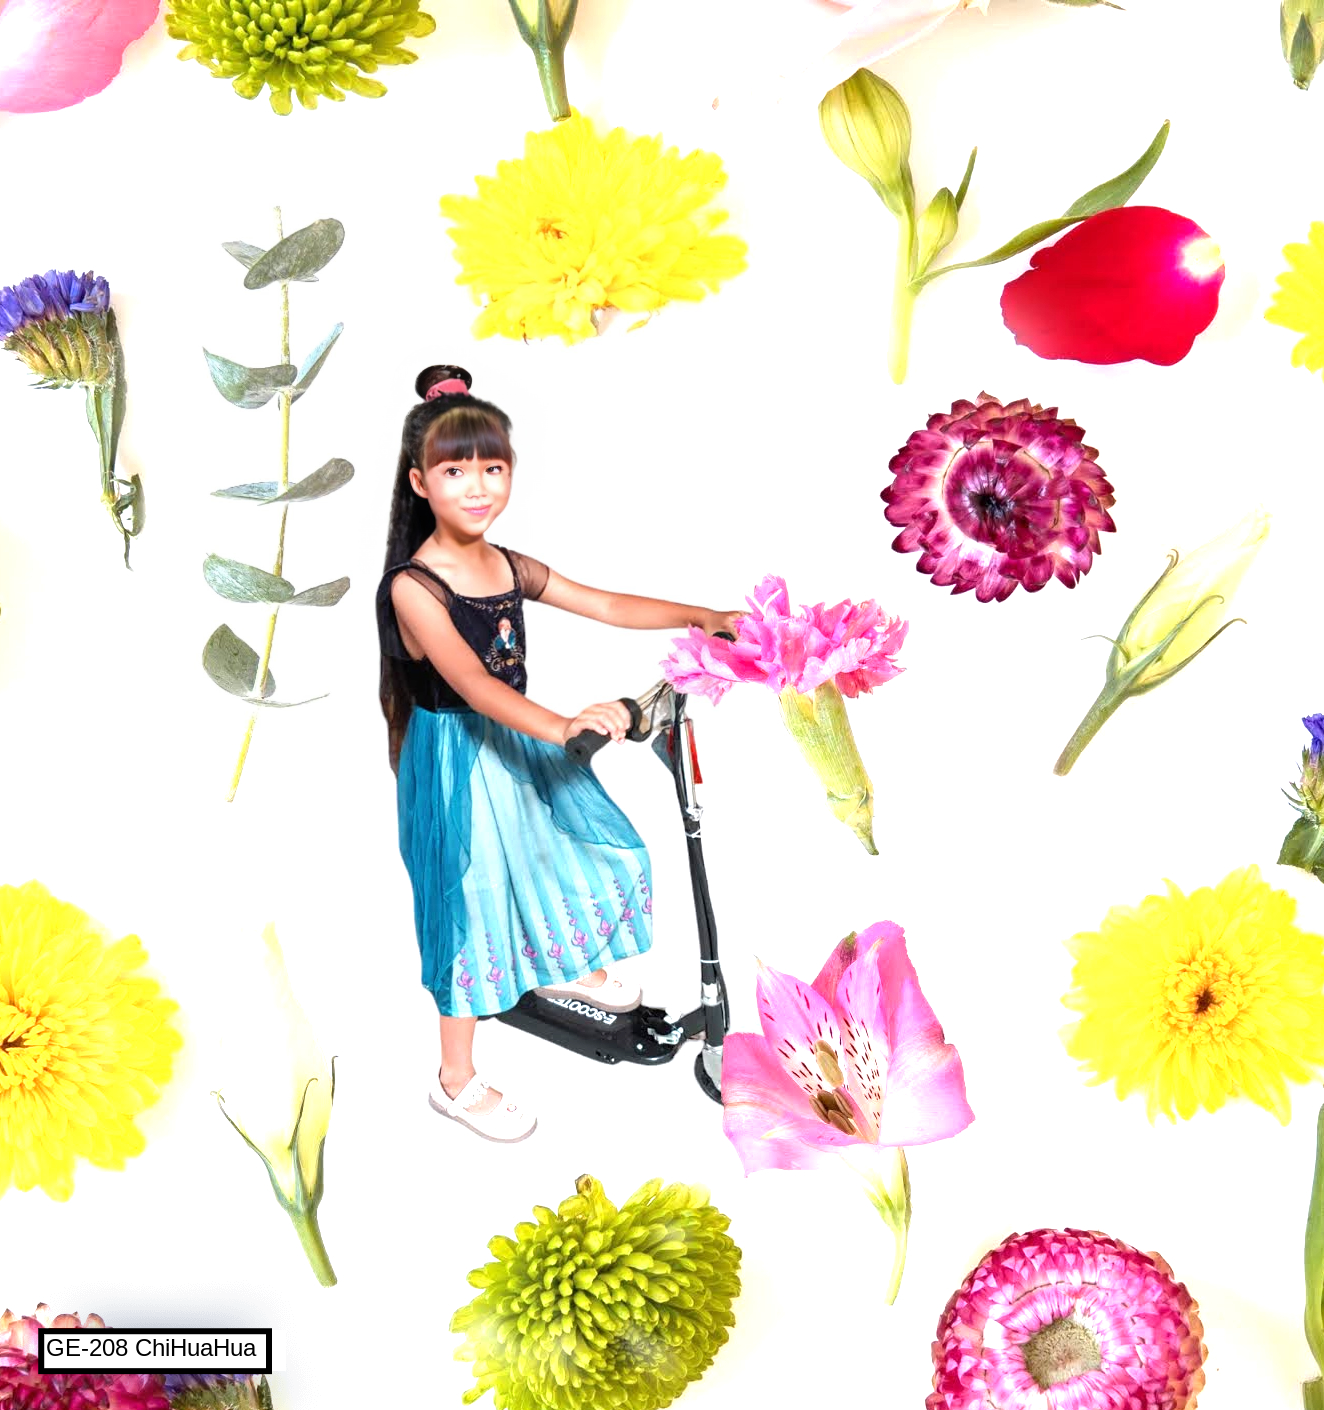 GE-208 Girl+Flowers